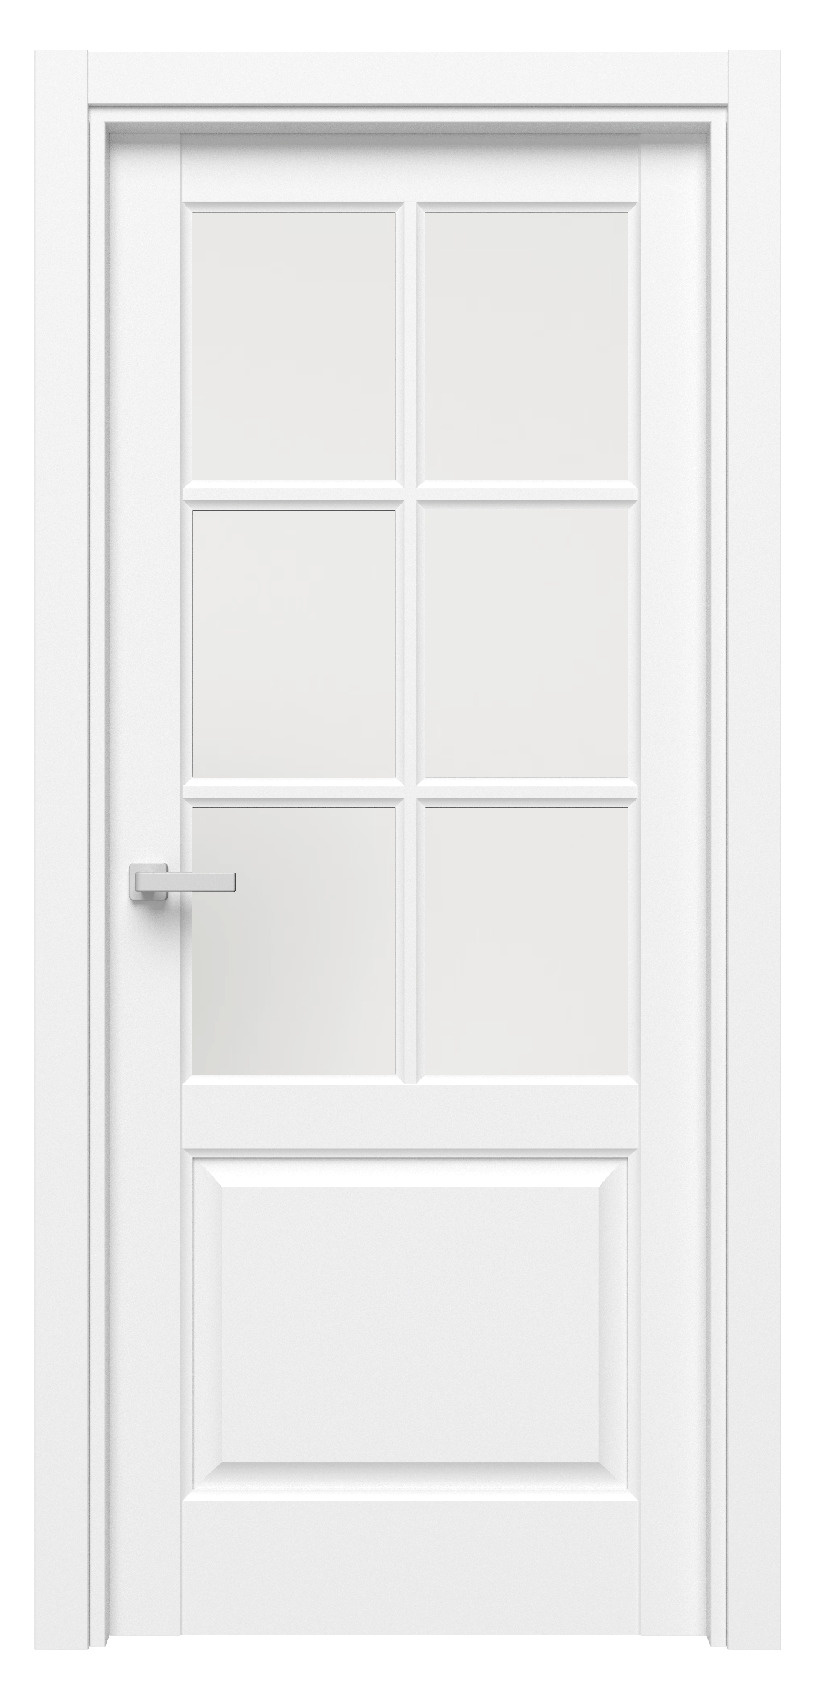 Questdoors Межкомнатная дверь QD12, арт. 17523 - фото №1